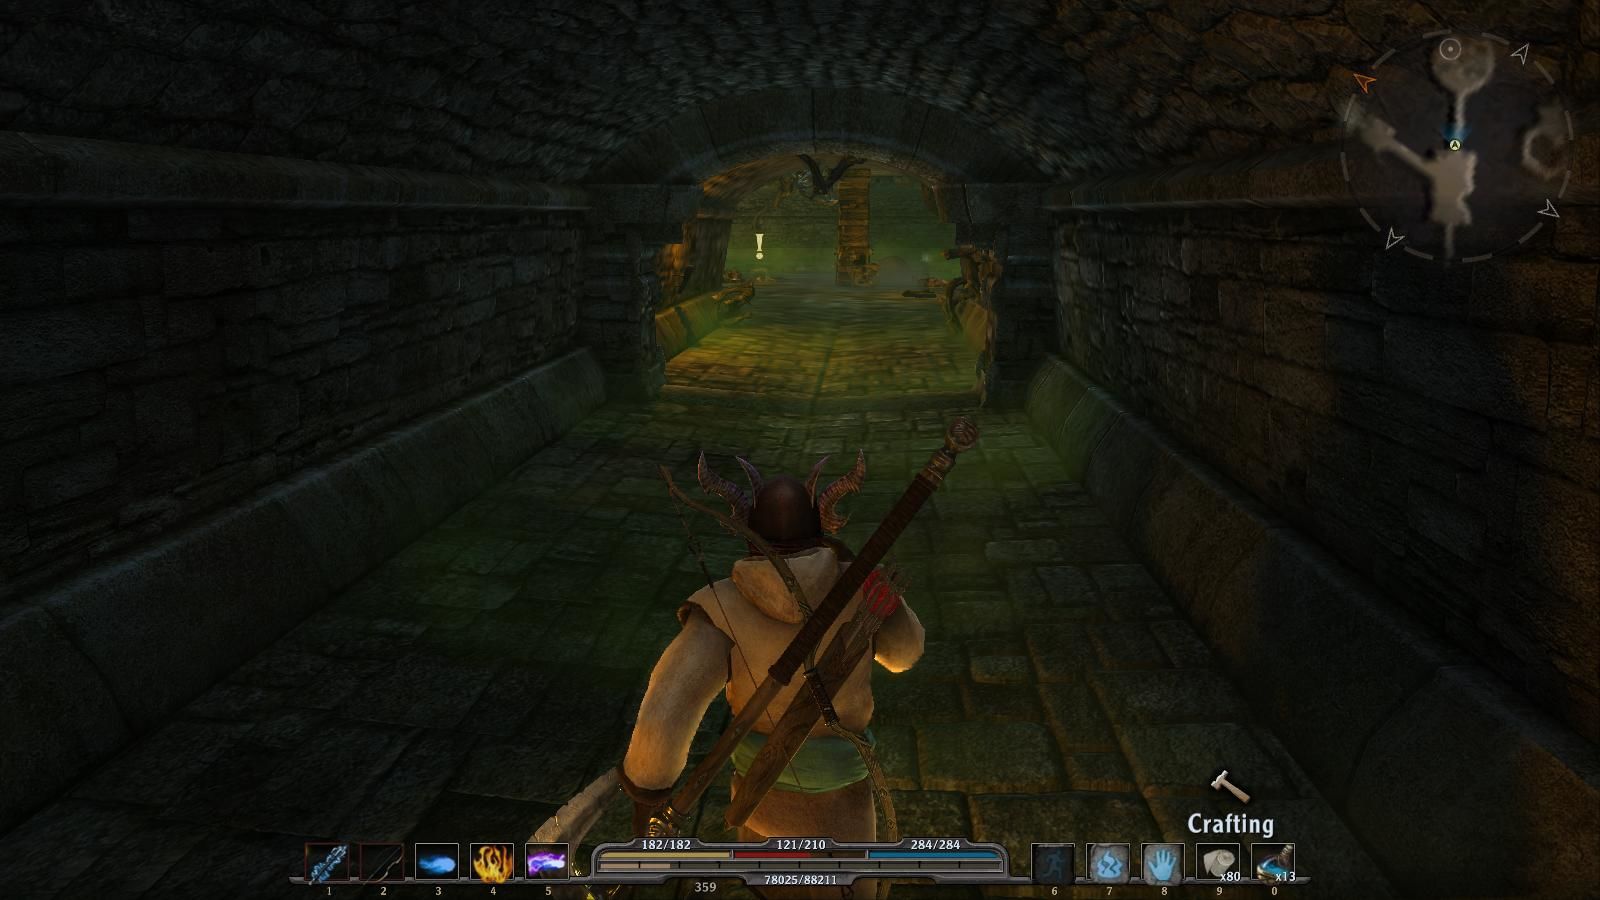 Arcania: Gothic 4 скриншот (фото)